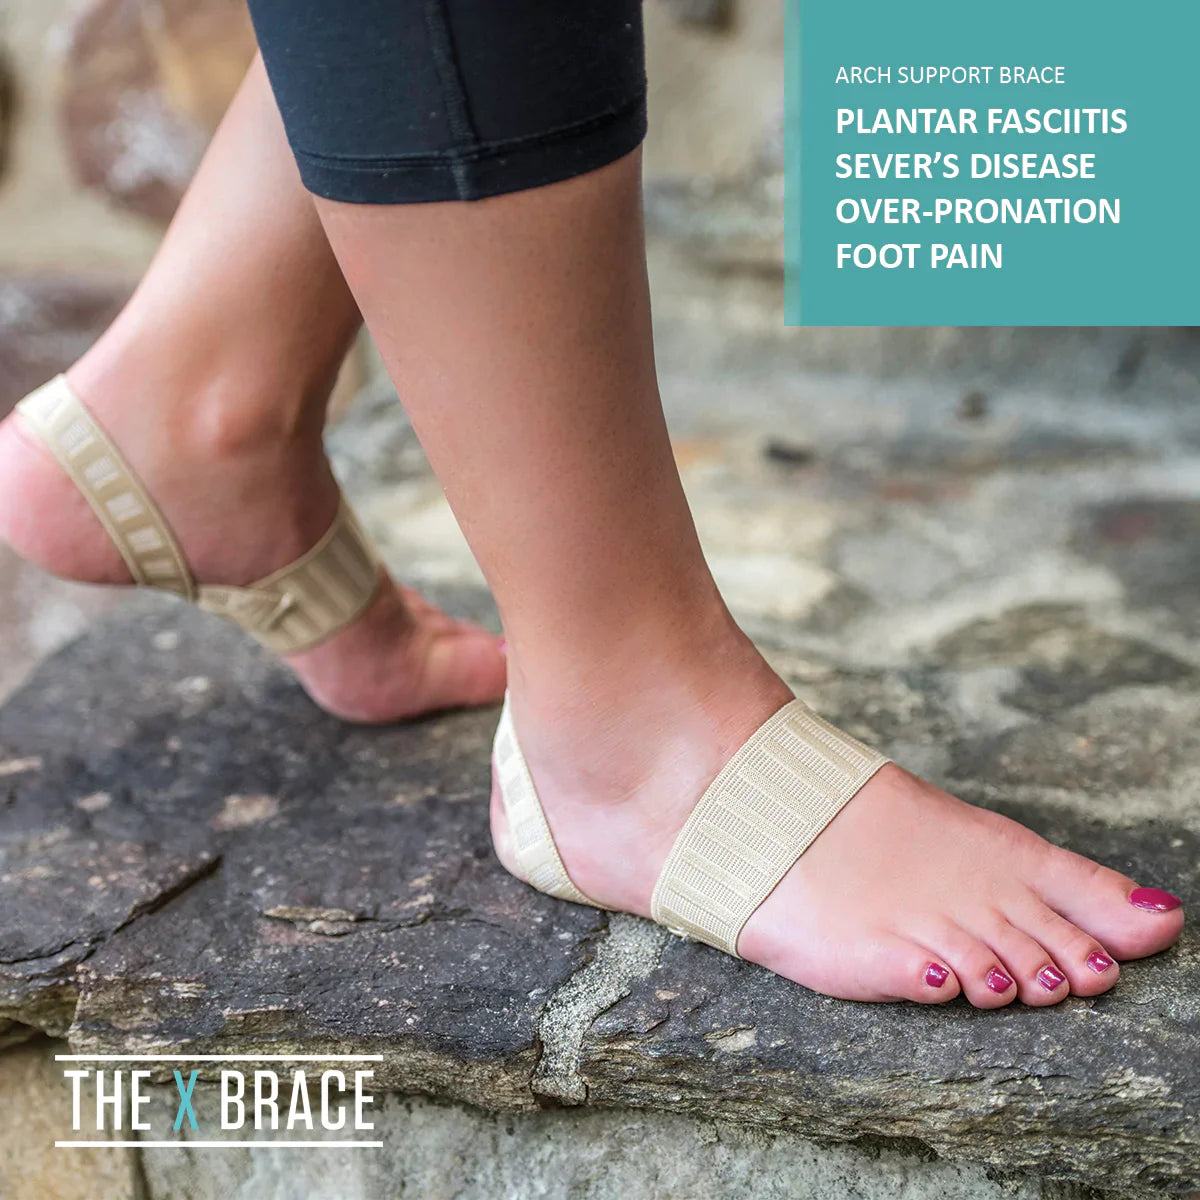 THE X BRACE PREMIER TREATMENT FOR FOOT PAIN